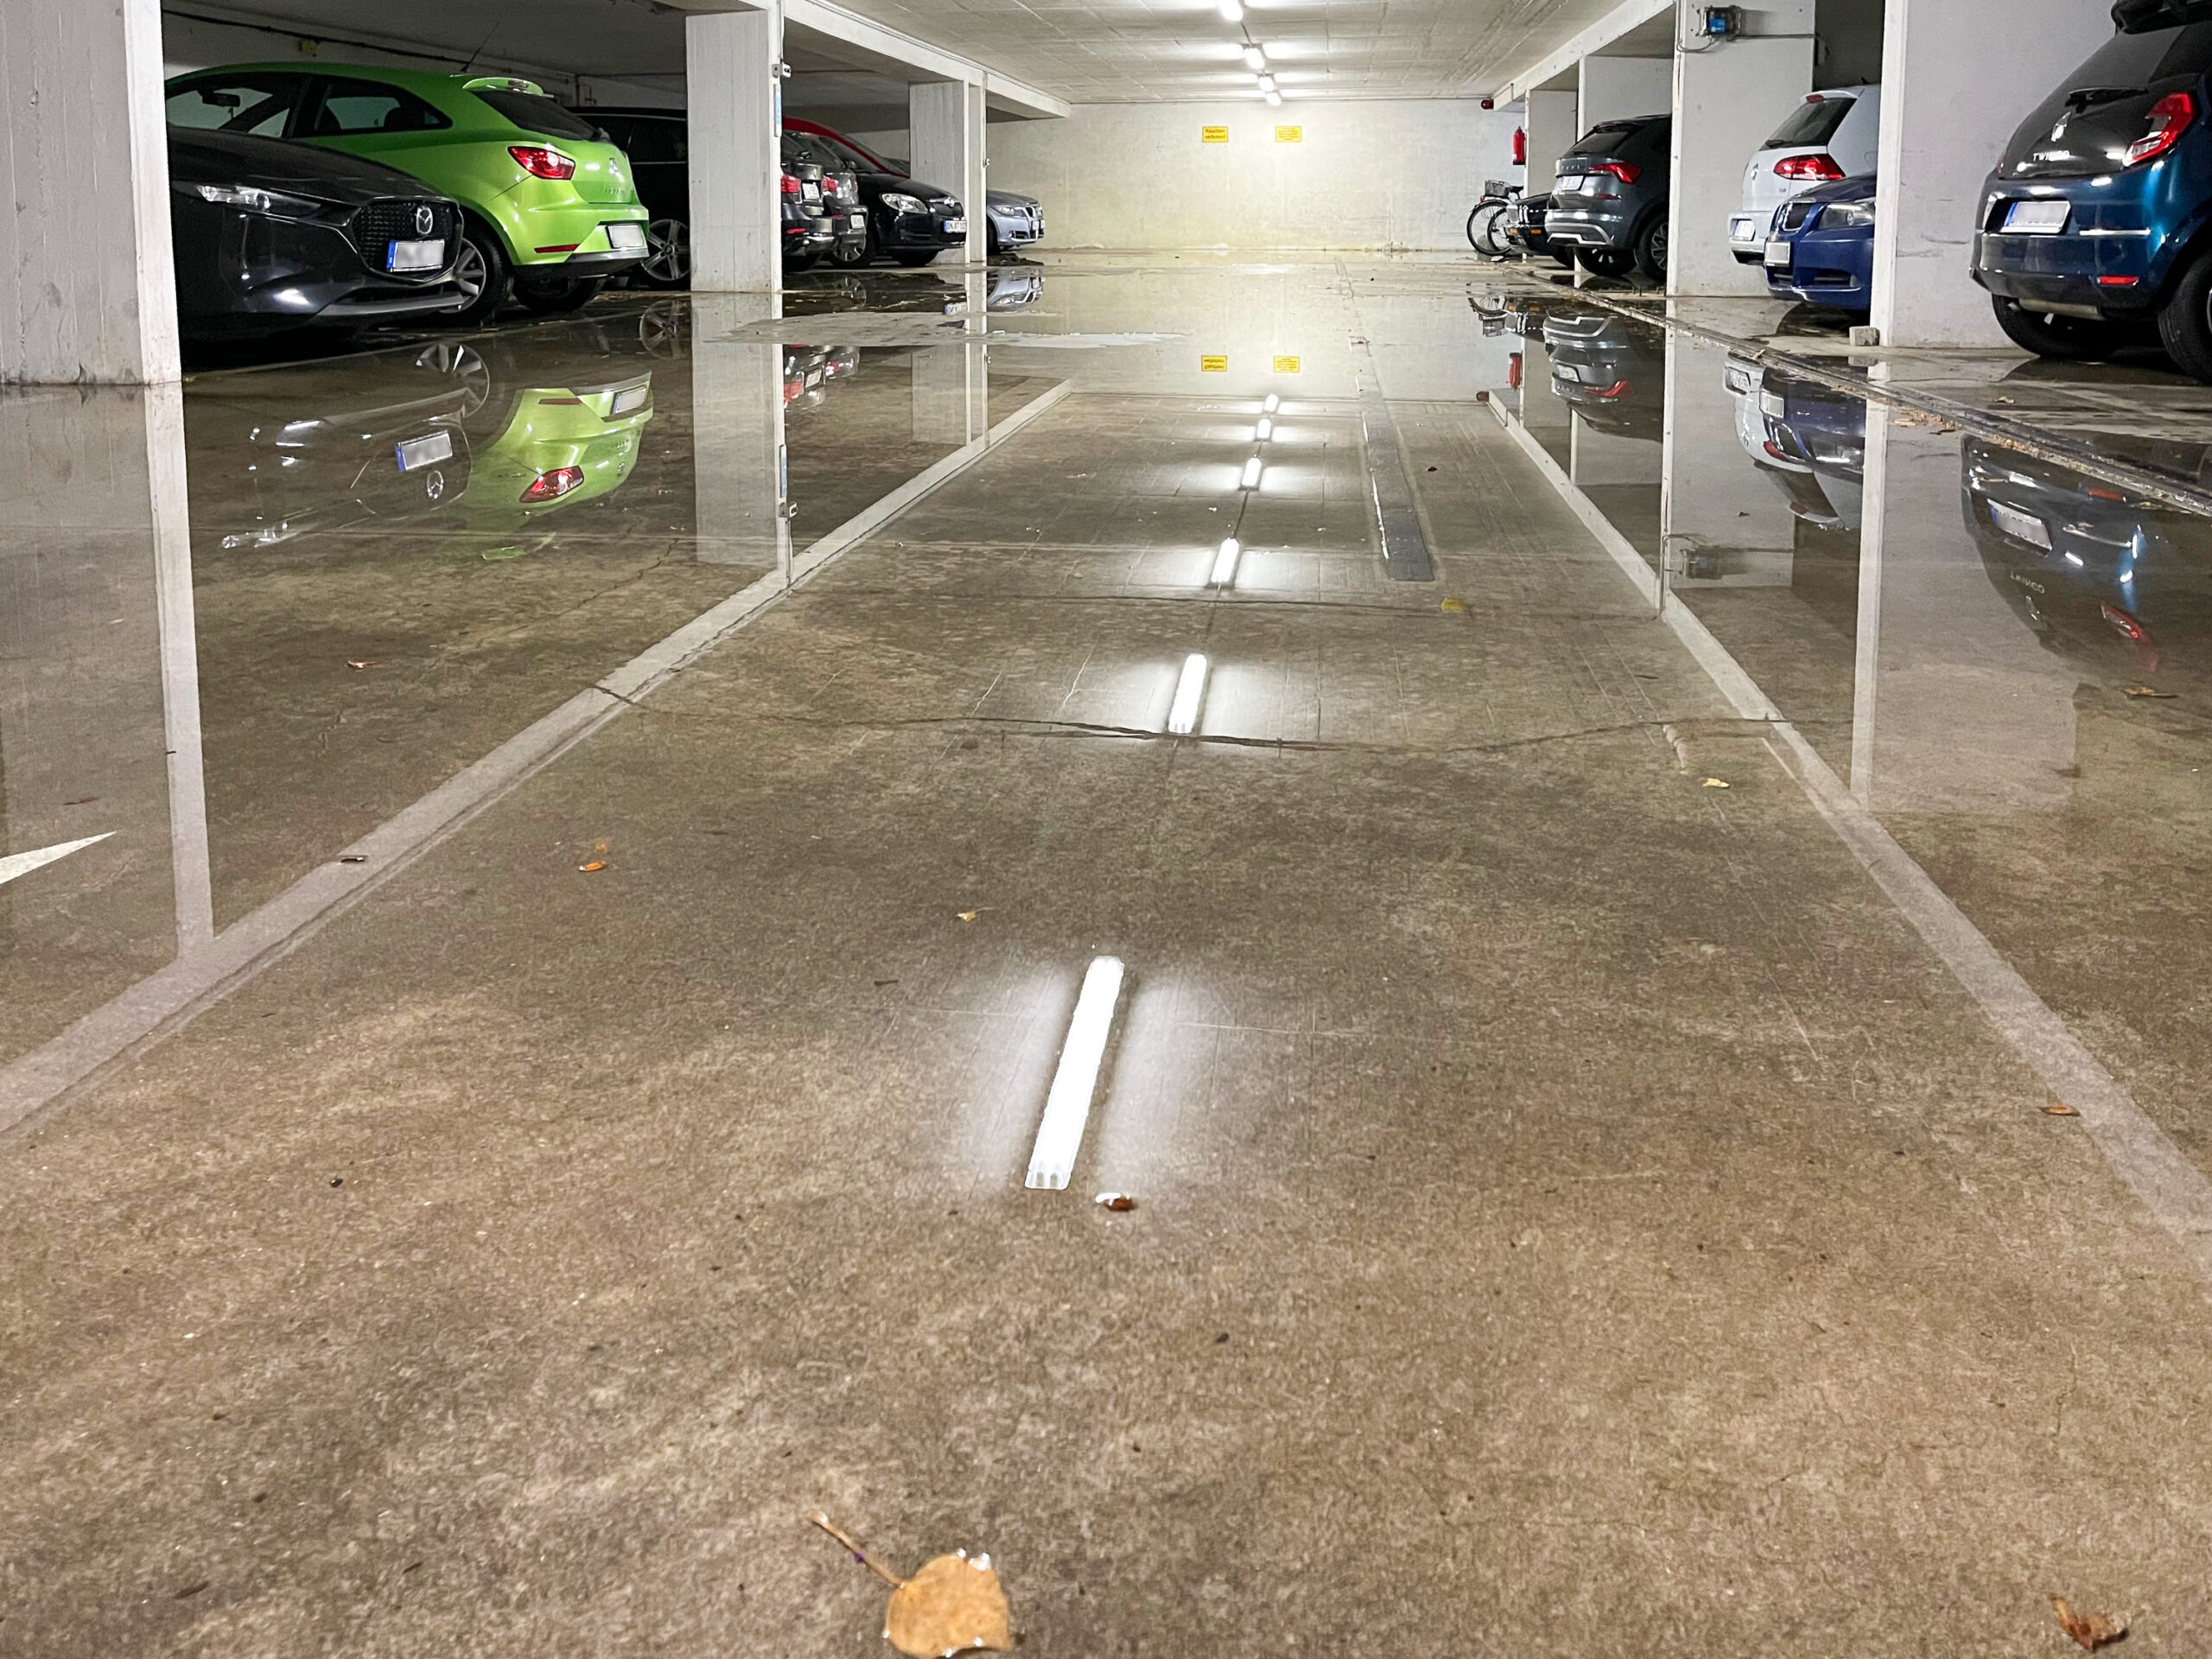 Eine Tiefgarage, links und rechts parken Autos, in der Mitte steht etwa zwei Zentimeter hoch das Wasser, sodass sich Autos und Beleuchtung spiegeln.